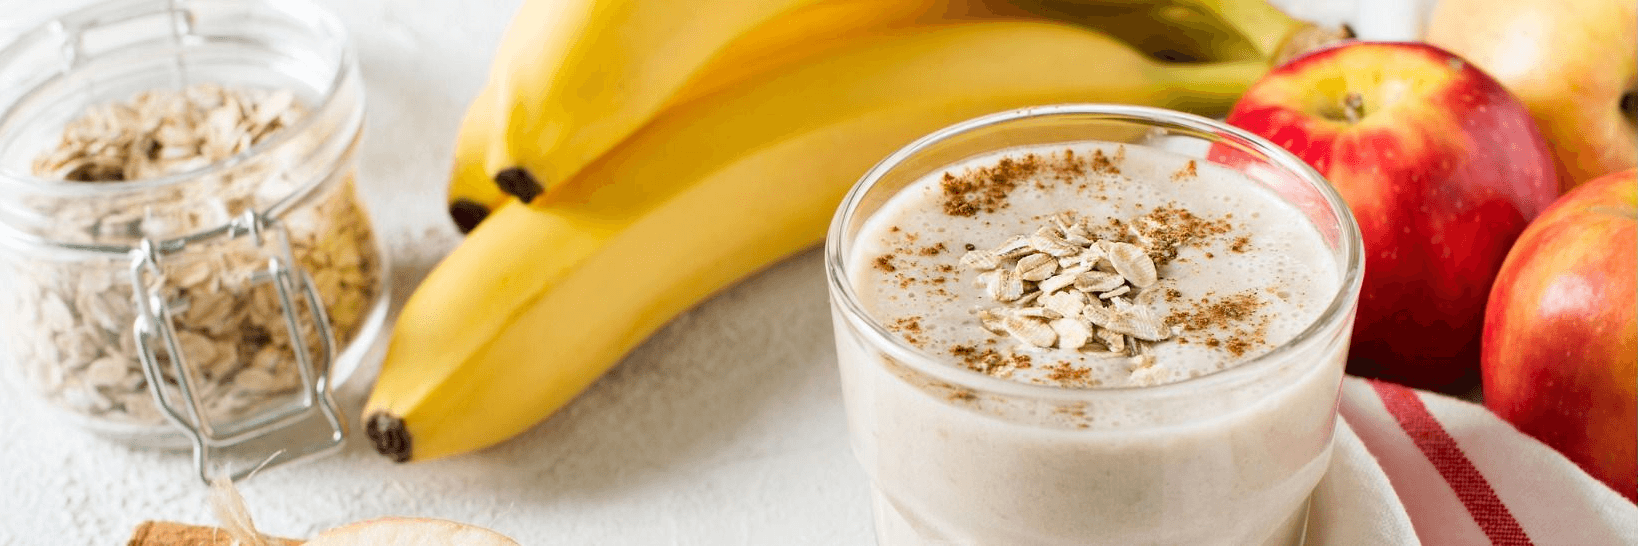 Apfel-Bananen-Smoothie mit resource Trinknahrung